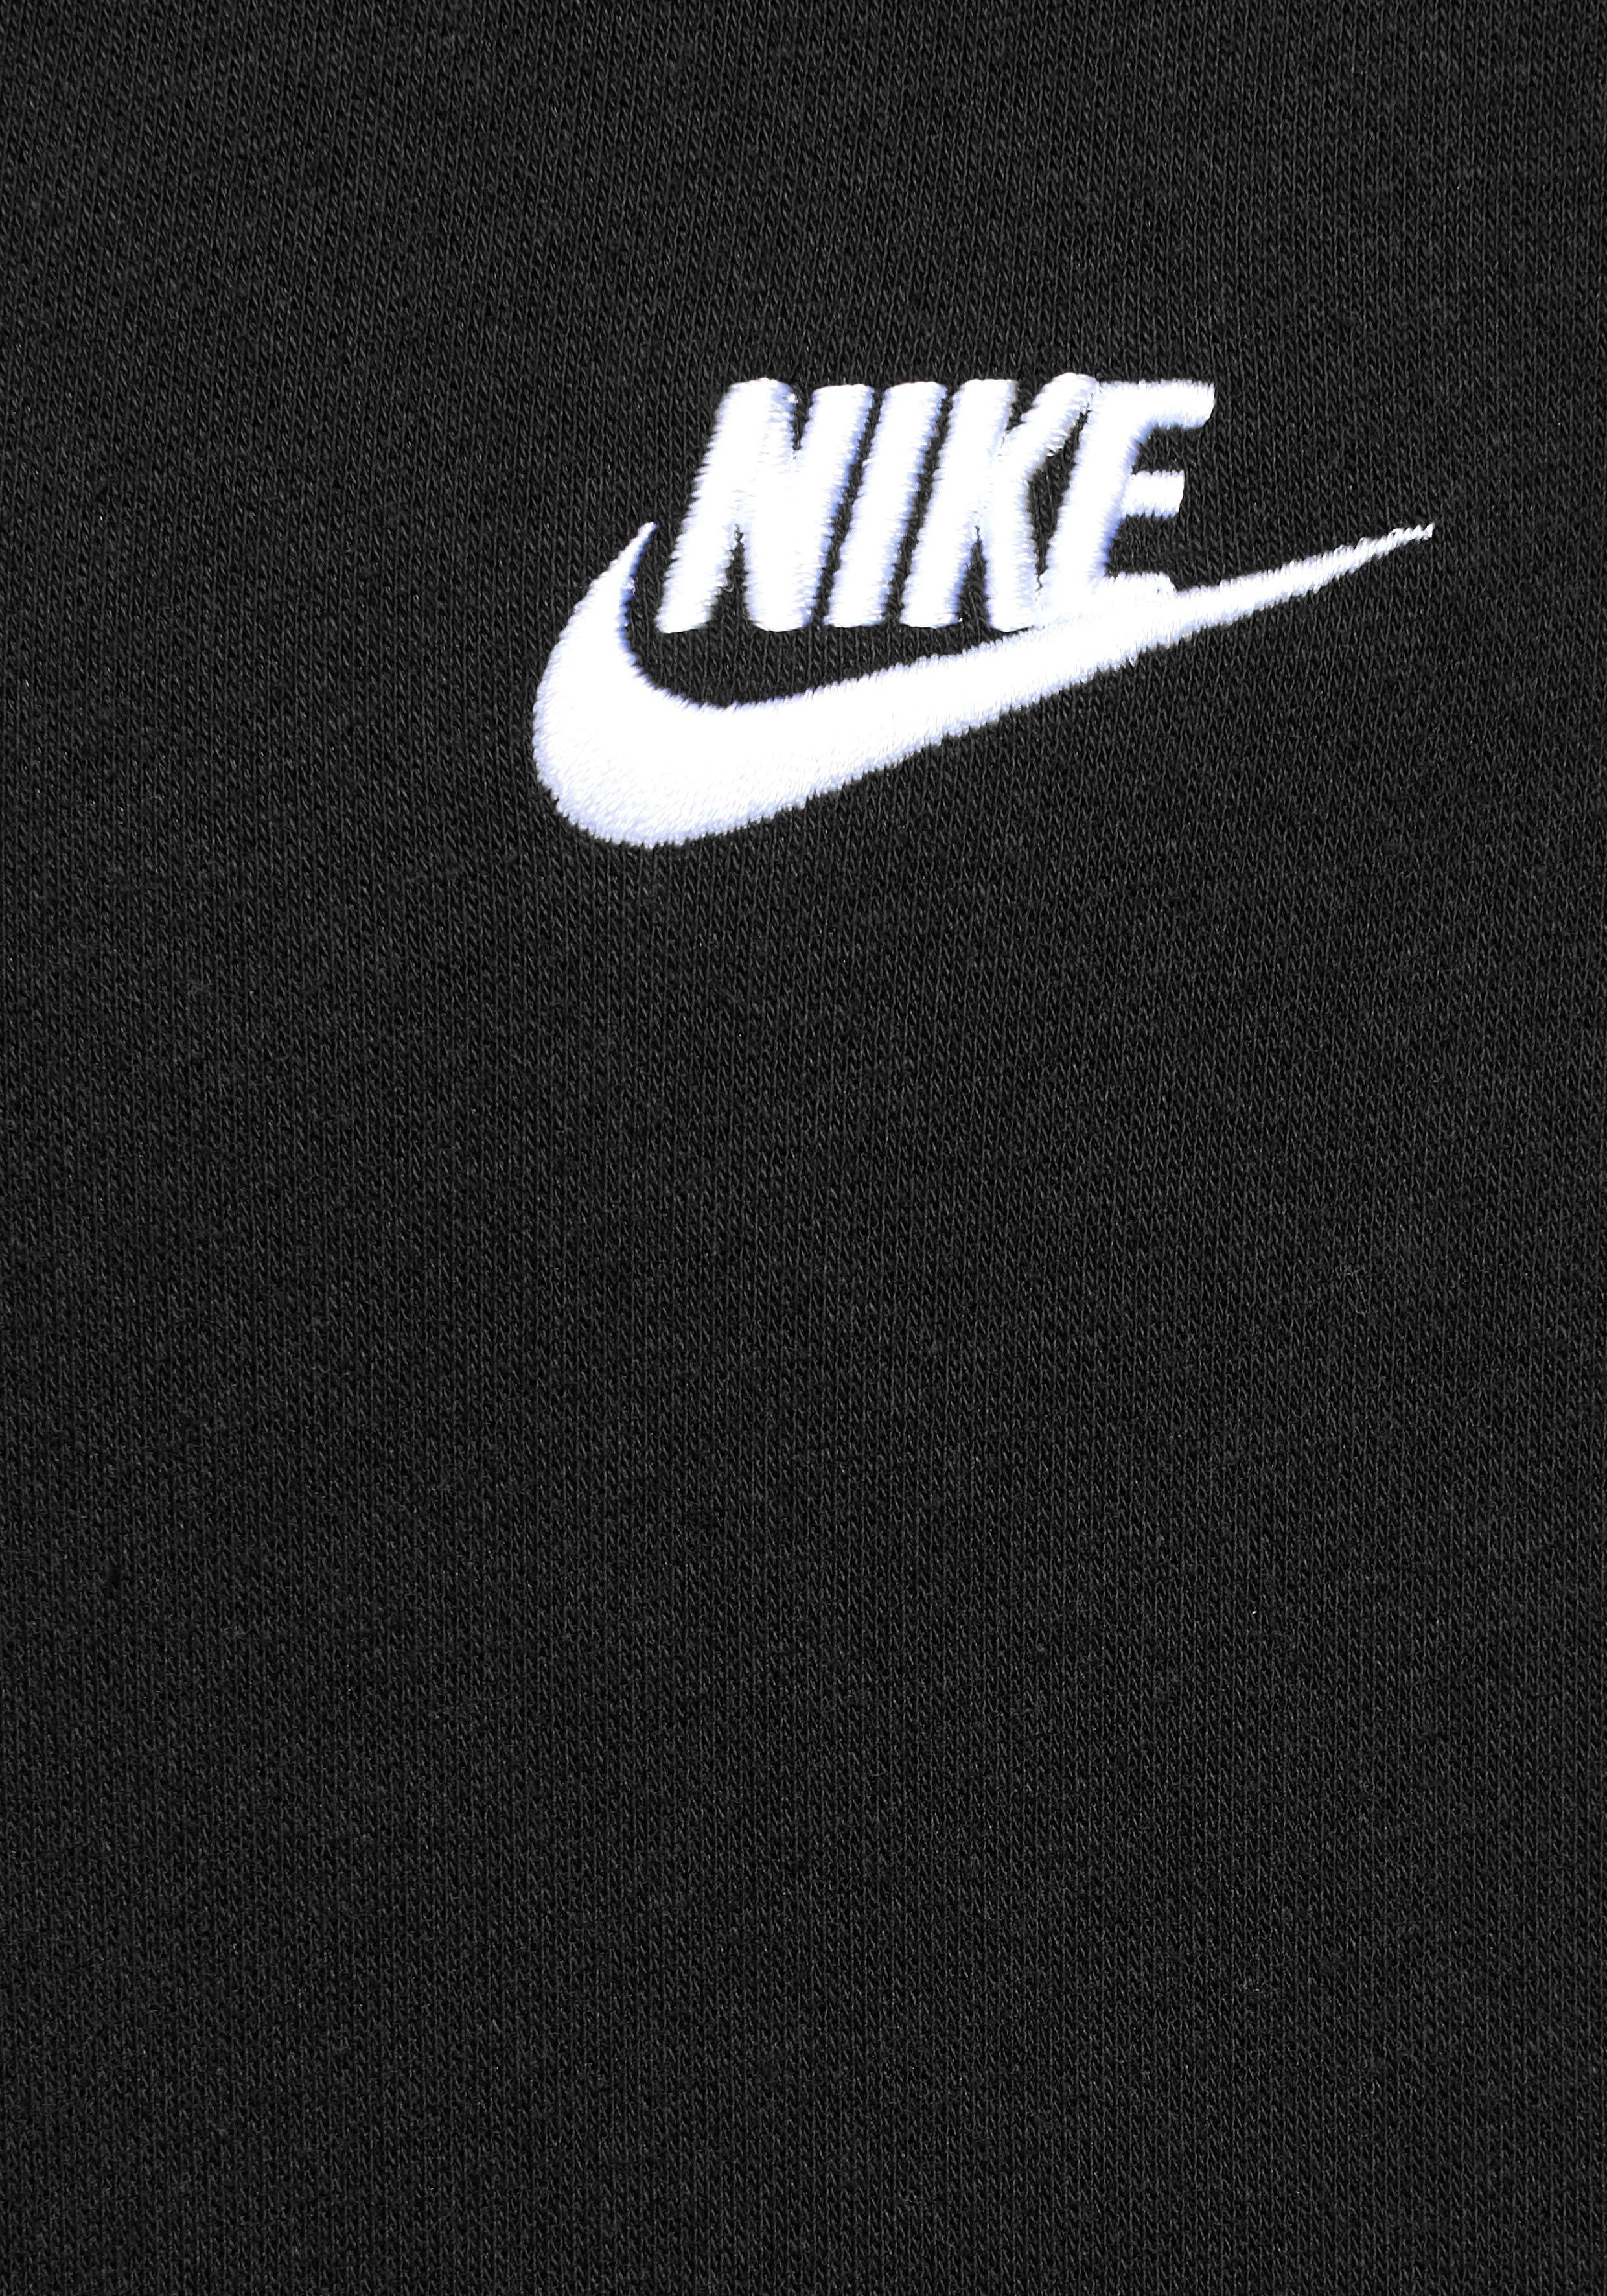 Nike Sportswear Sweatjacke Club Full-Zip Men's Fleece schwarz Hoodie